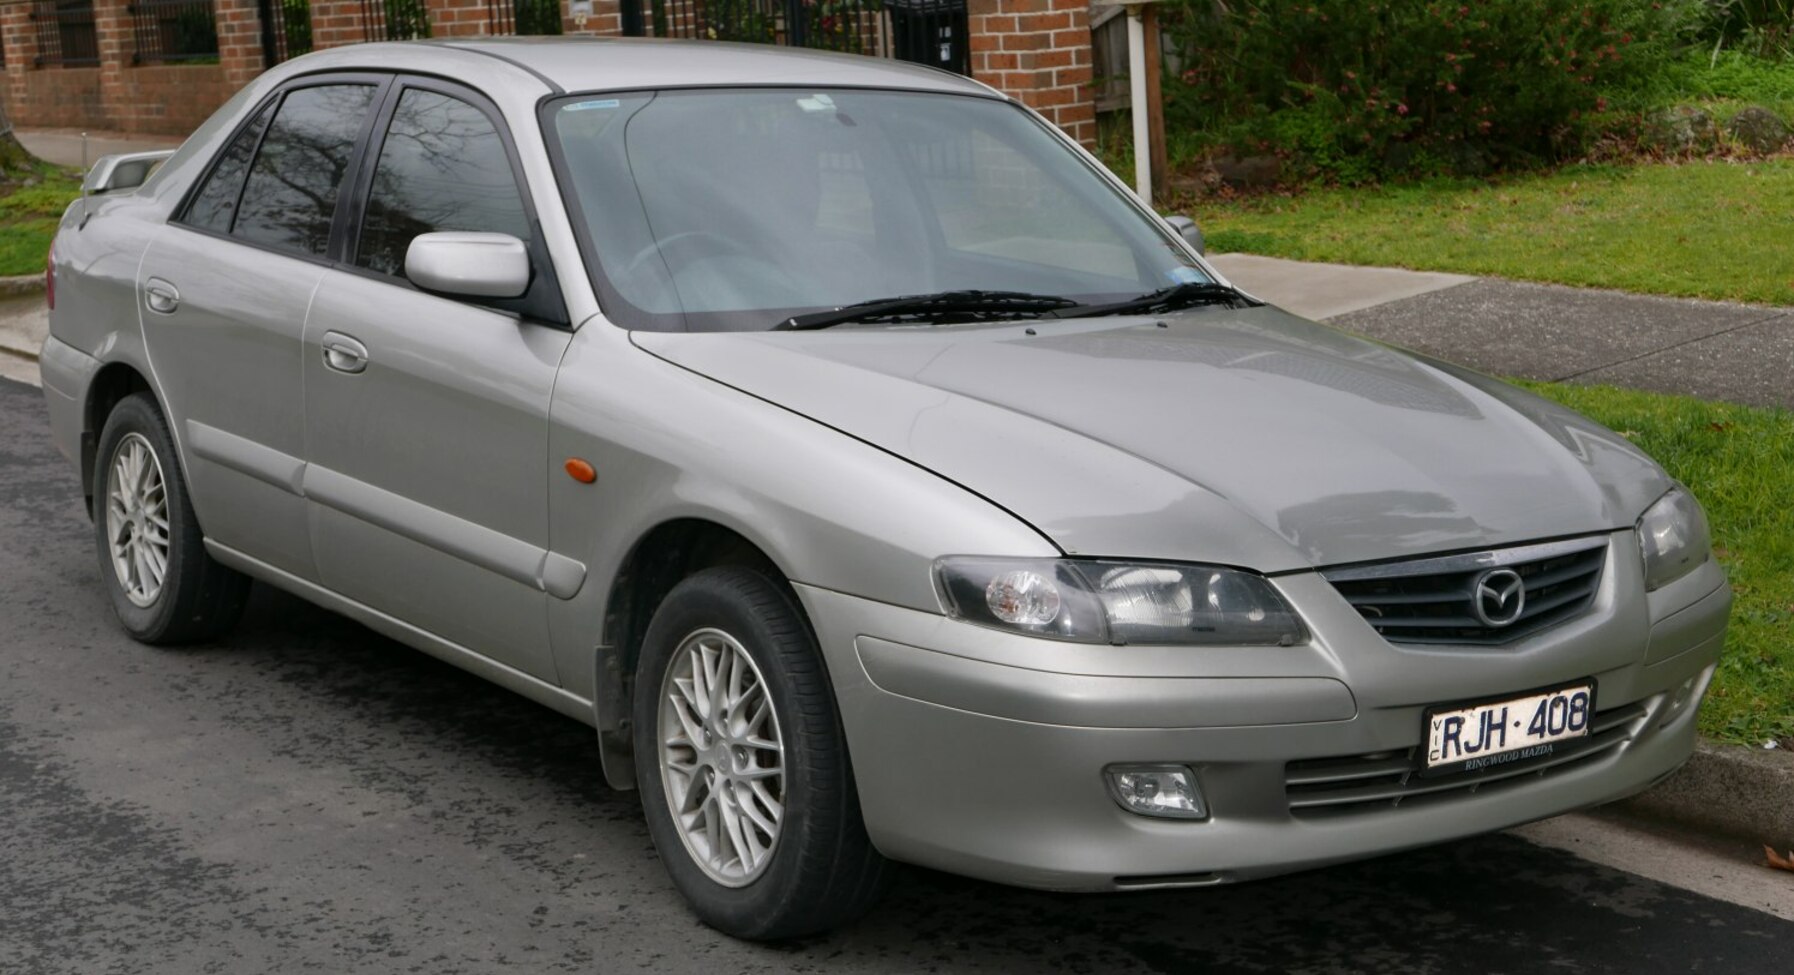 Mua bán ô tô Mazda 626 2003 giá 142 triệu - 1808958